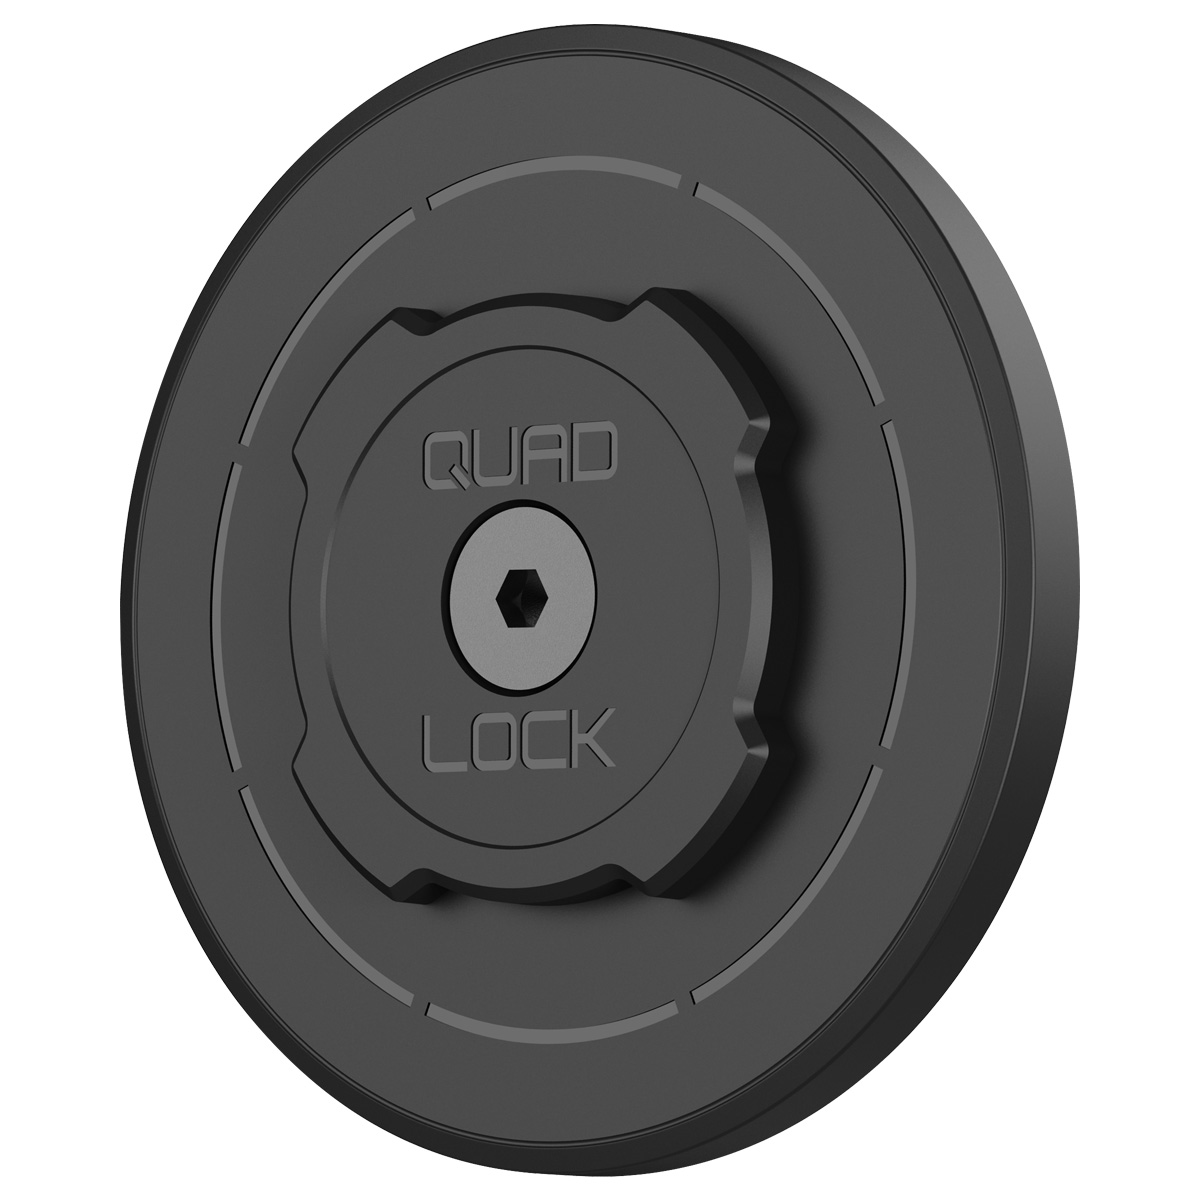 Quad Lock MAG Universal Adaptor